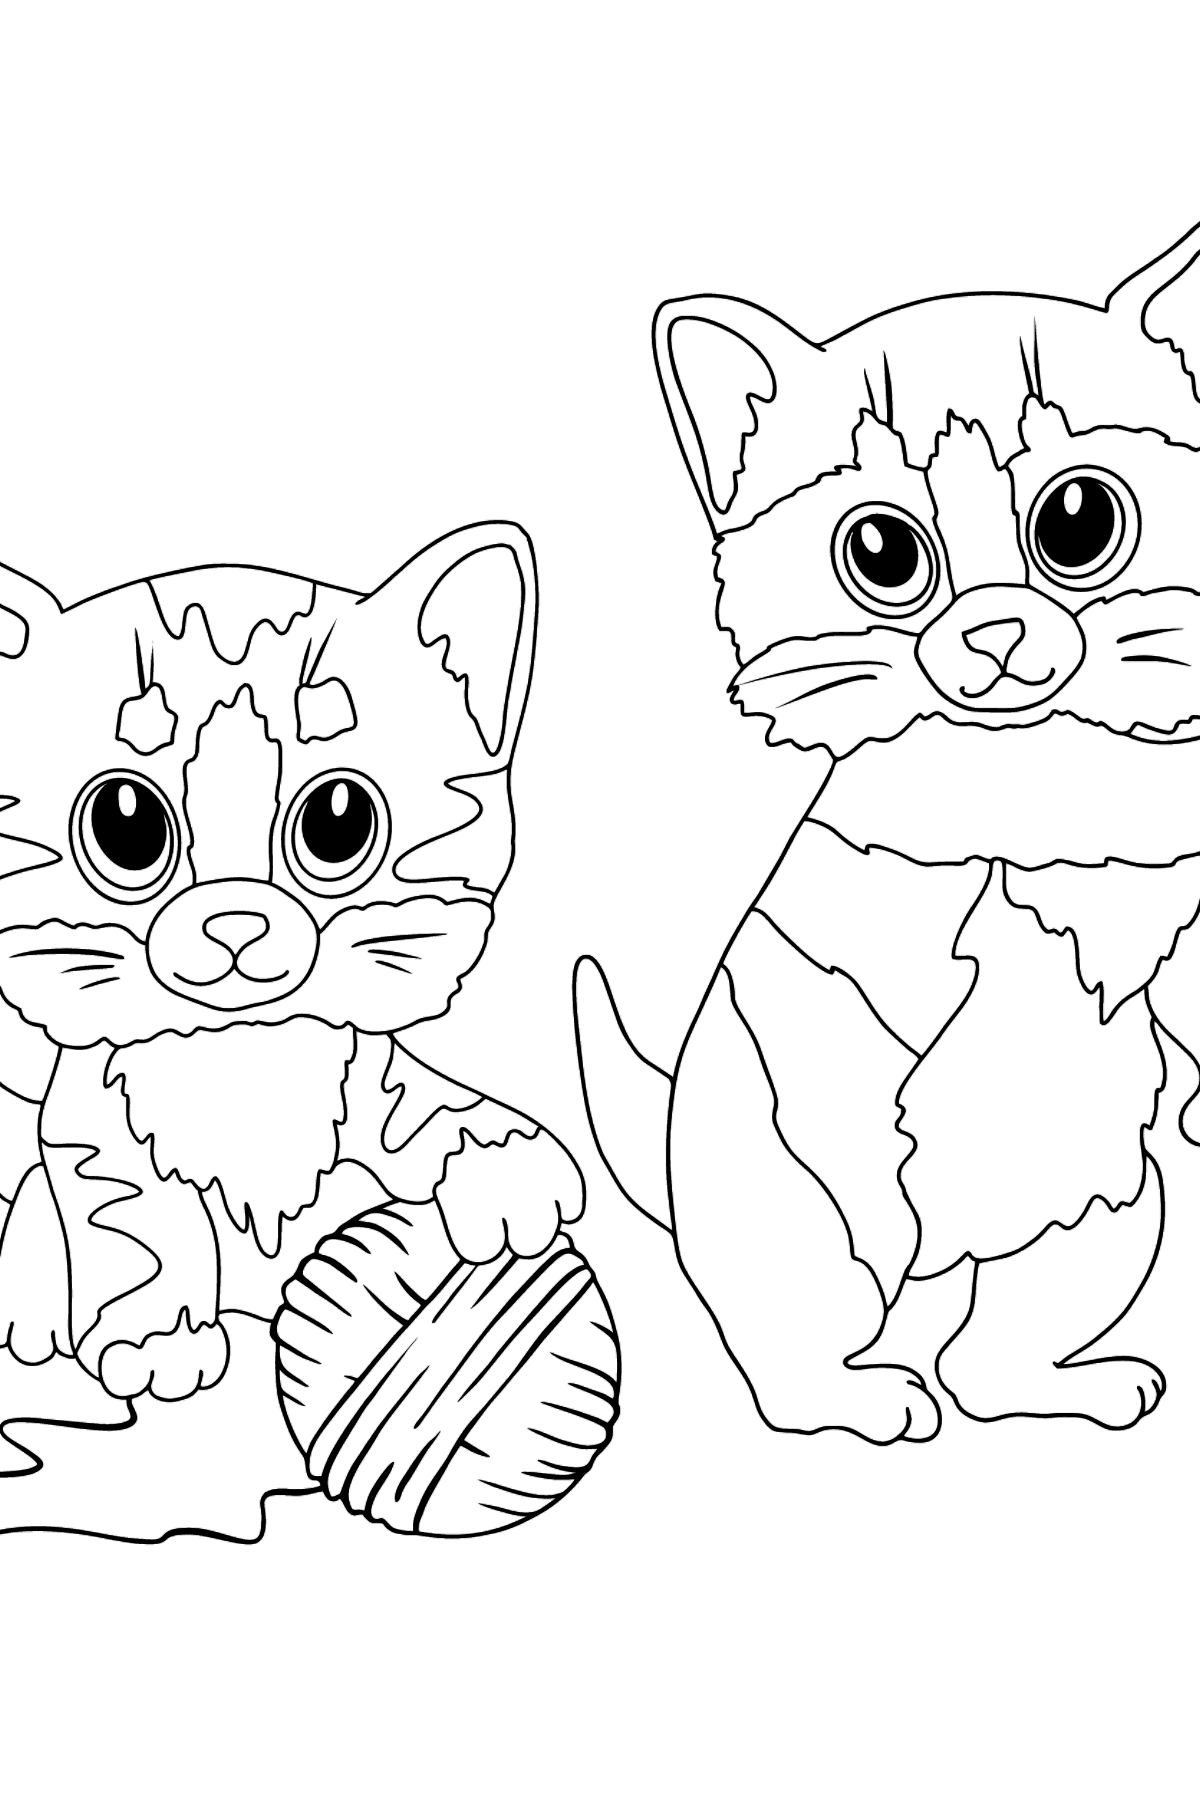 Kleurplaat grappige kittens (moeilijk) - kleurplaten voor kinderen